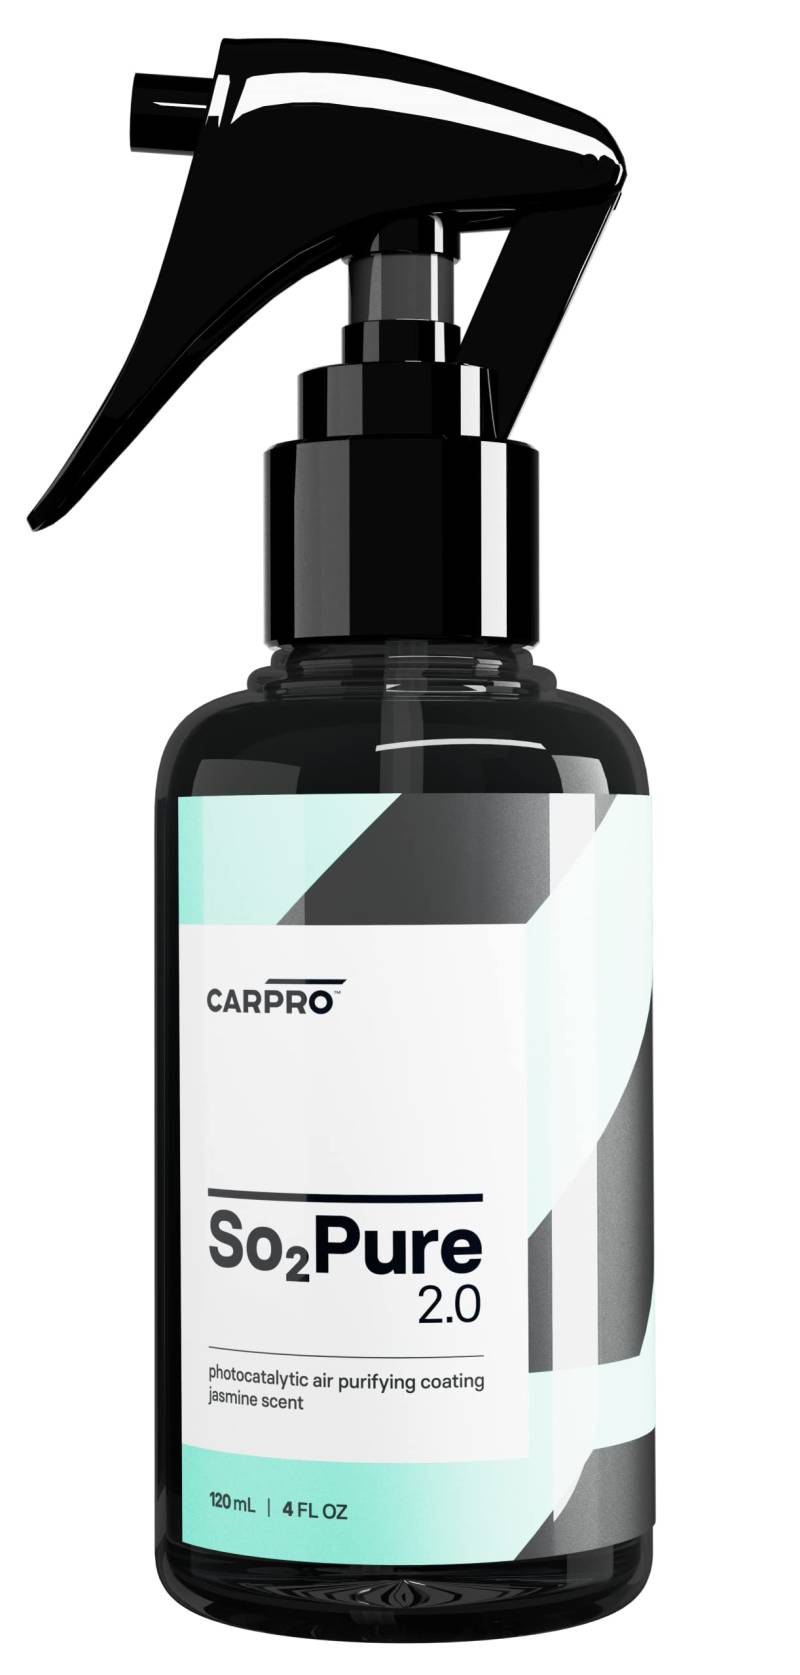 CarPro so2pure Geruch-Spray 120 ml von CarPro